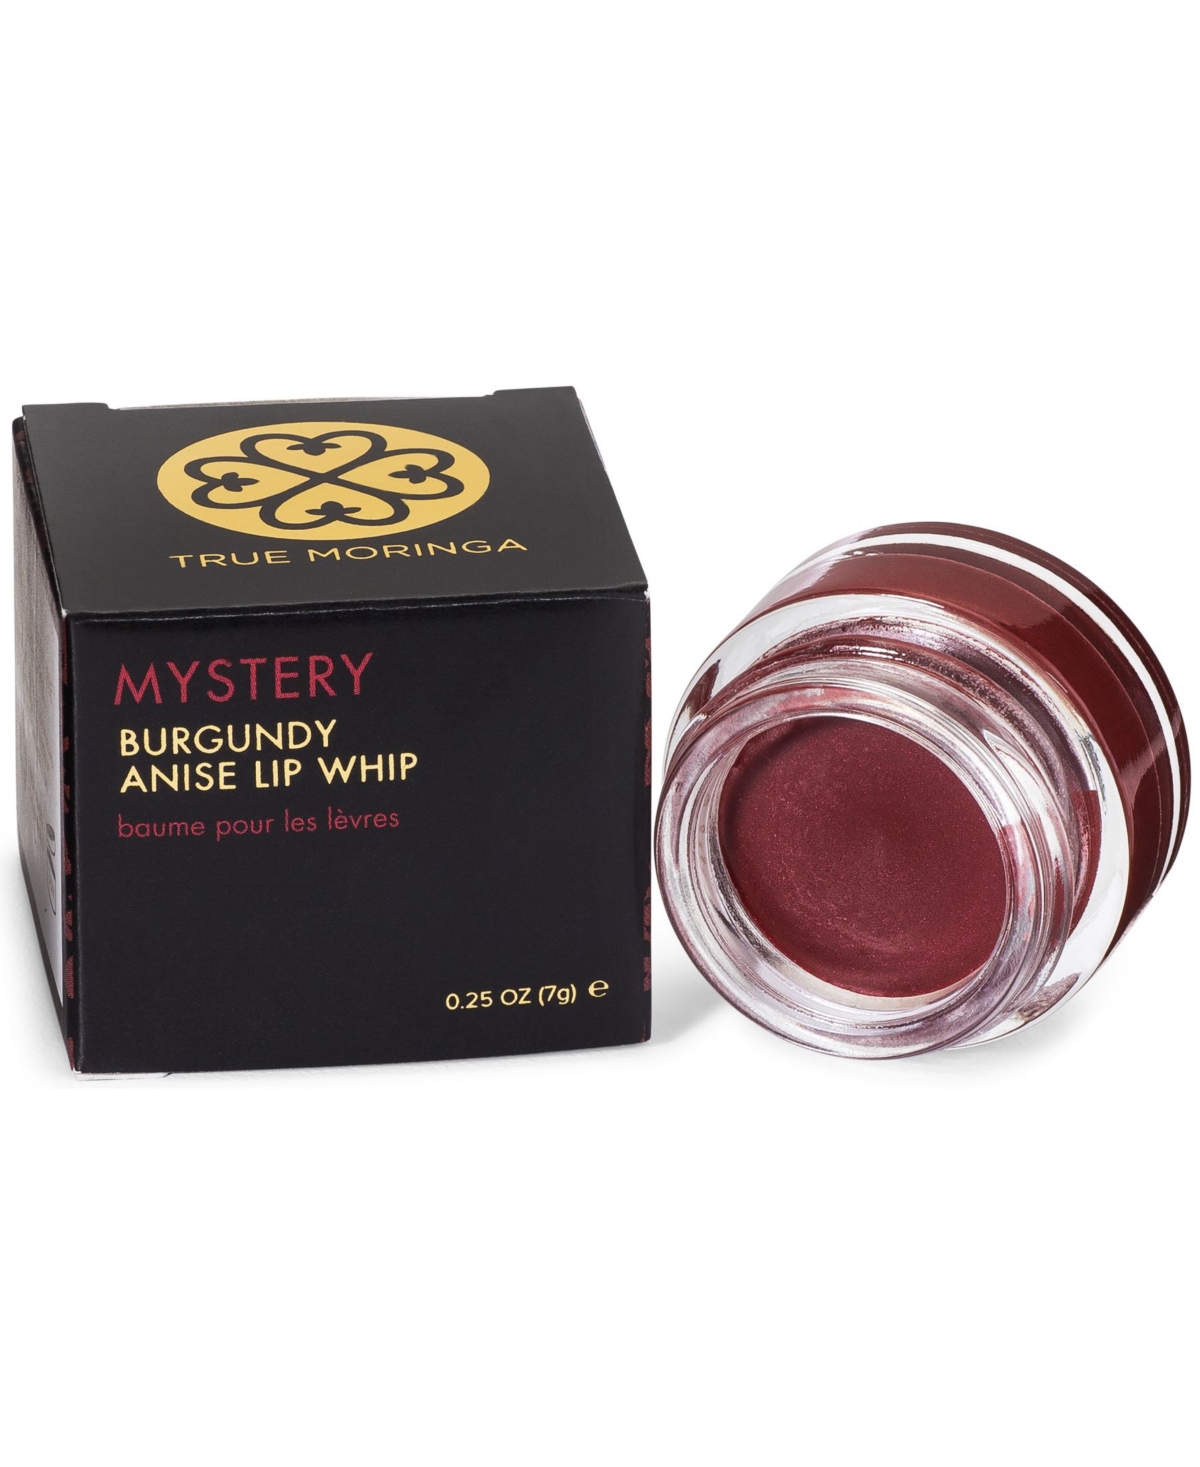 Moisturizing Shimmer Burgundy Anise Lip Whip Balm, 0.25 oz. - Burgundy